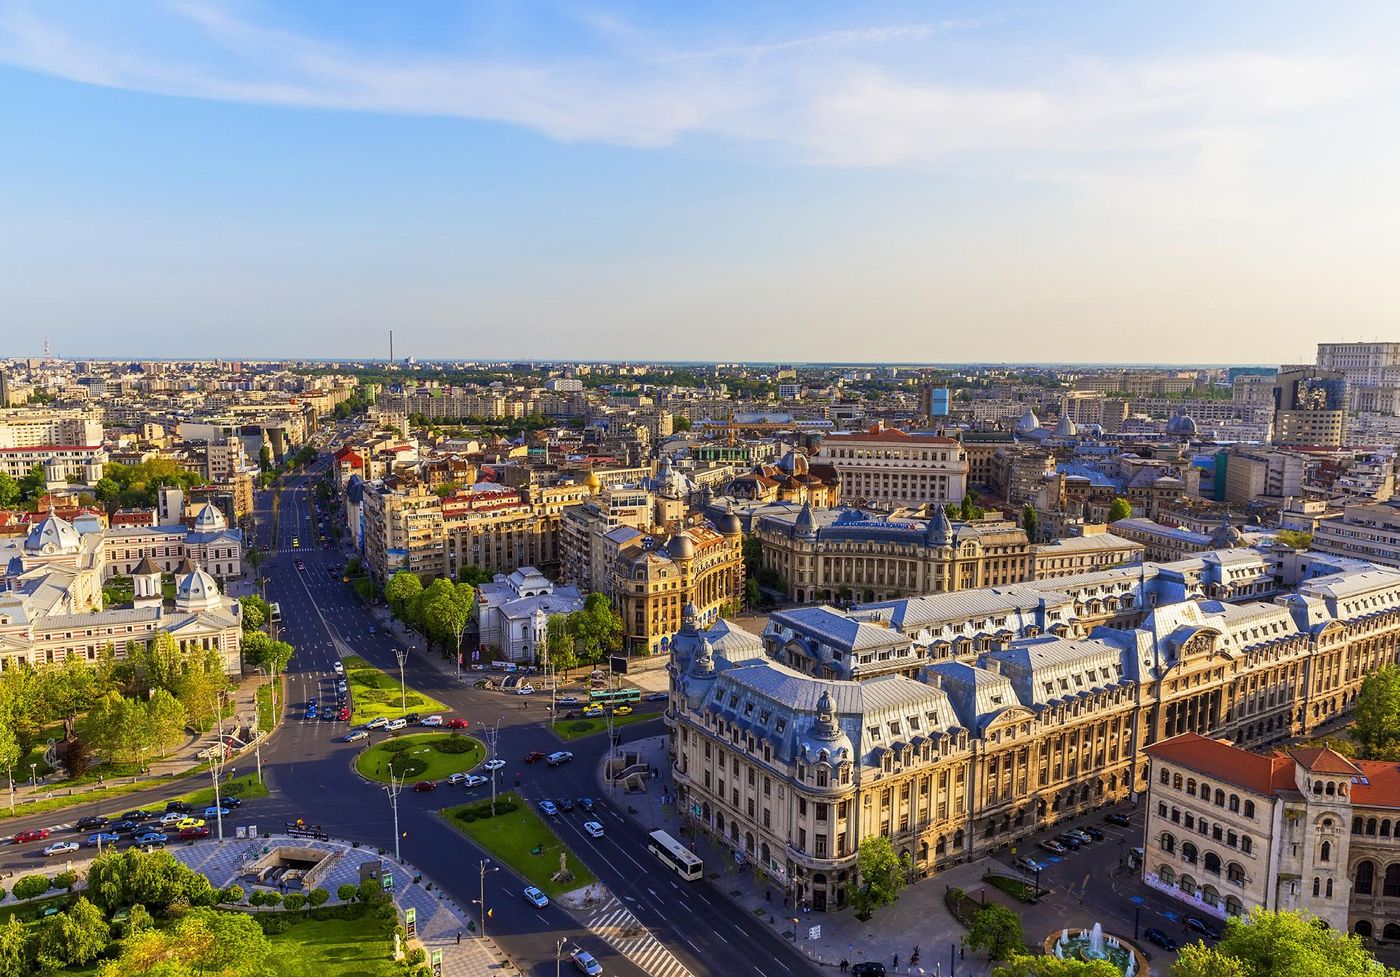 Bukareszt: miejska przygoda